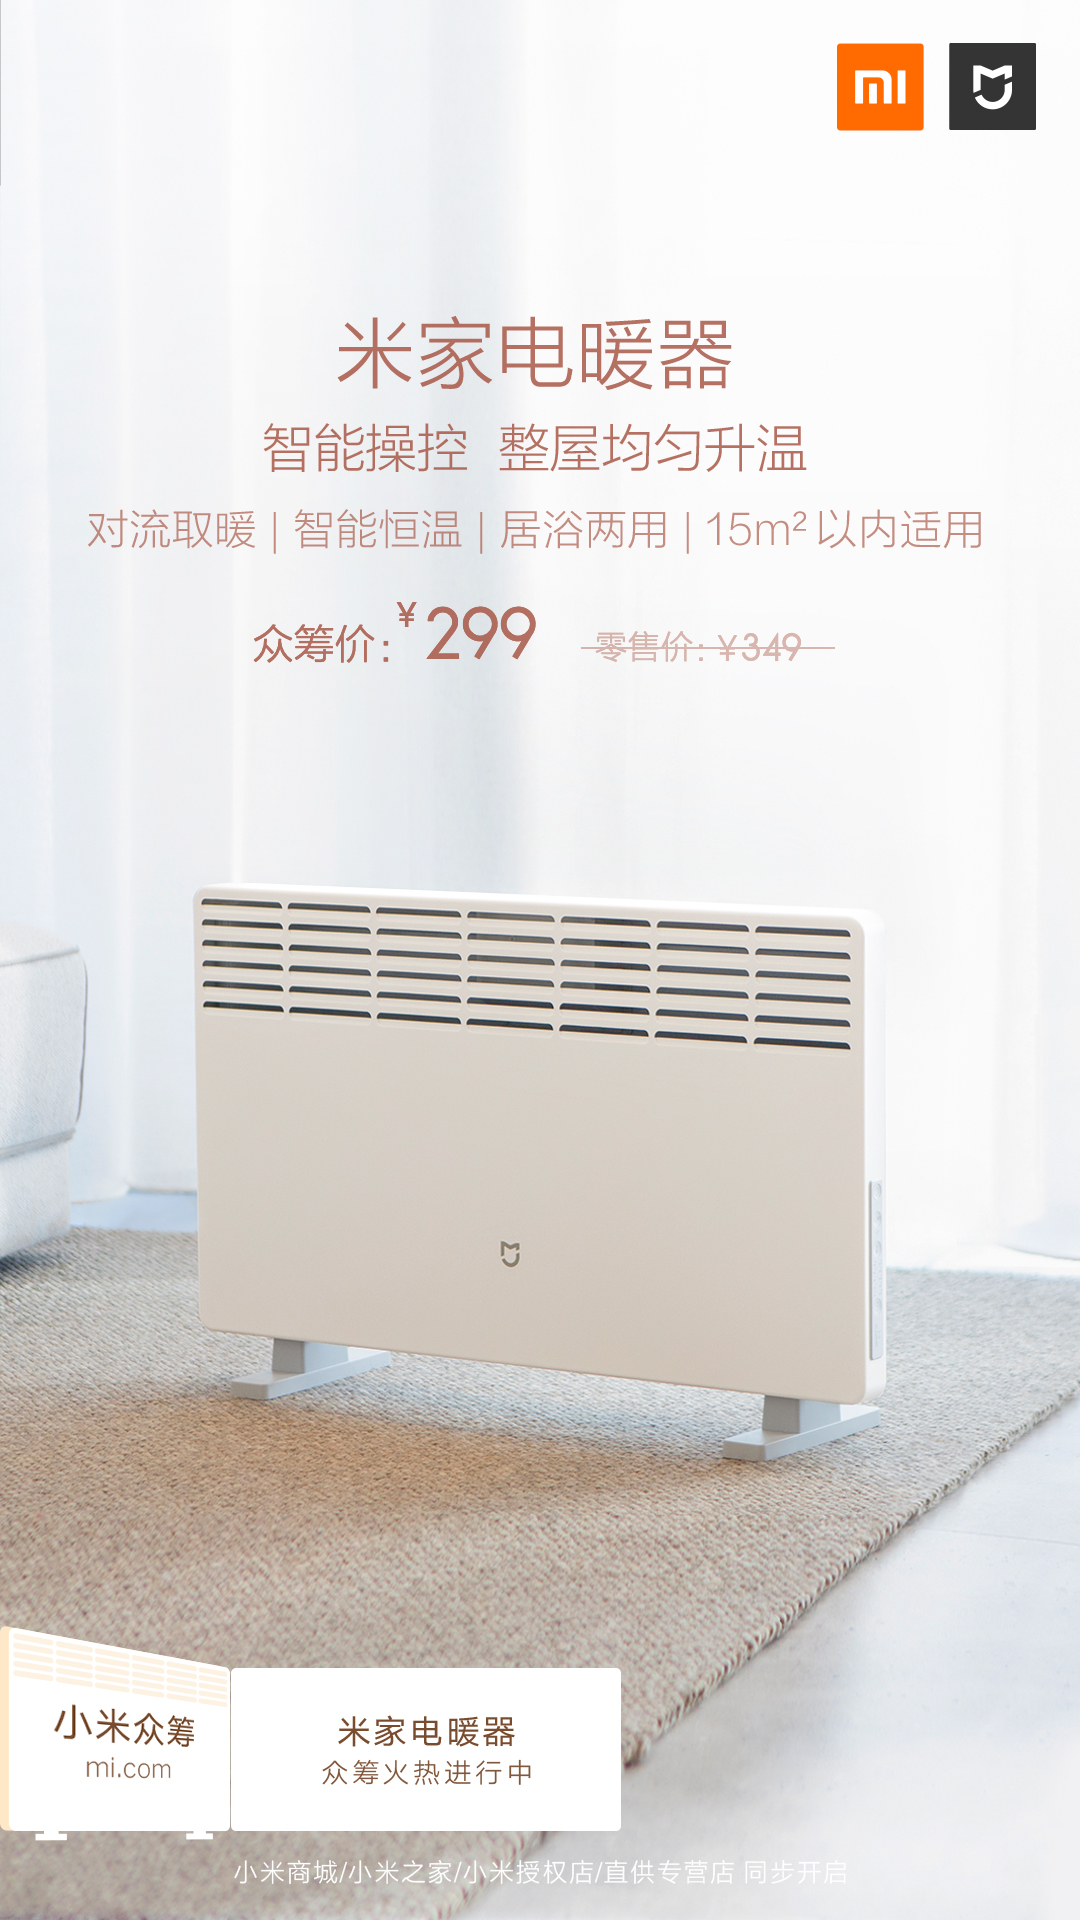 米家电暖器发布众筹价299元 米兔<span  style='background-color:Yellow;'>儿童书包</span>2将开售